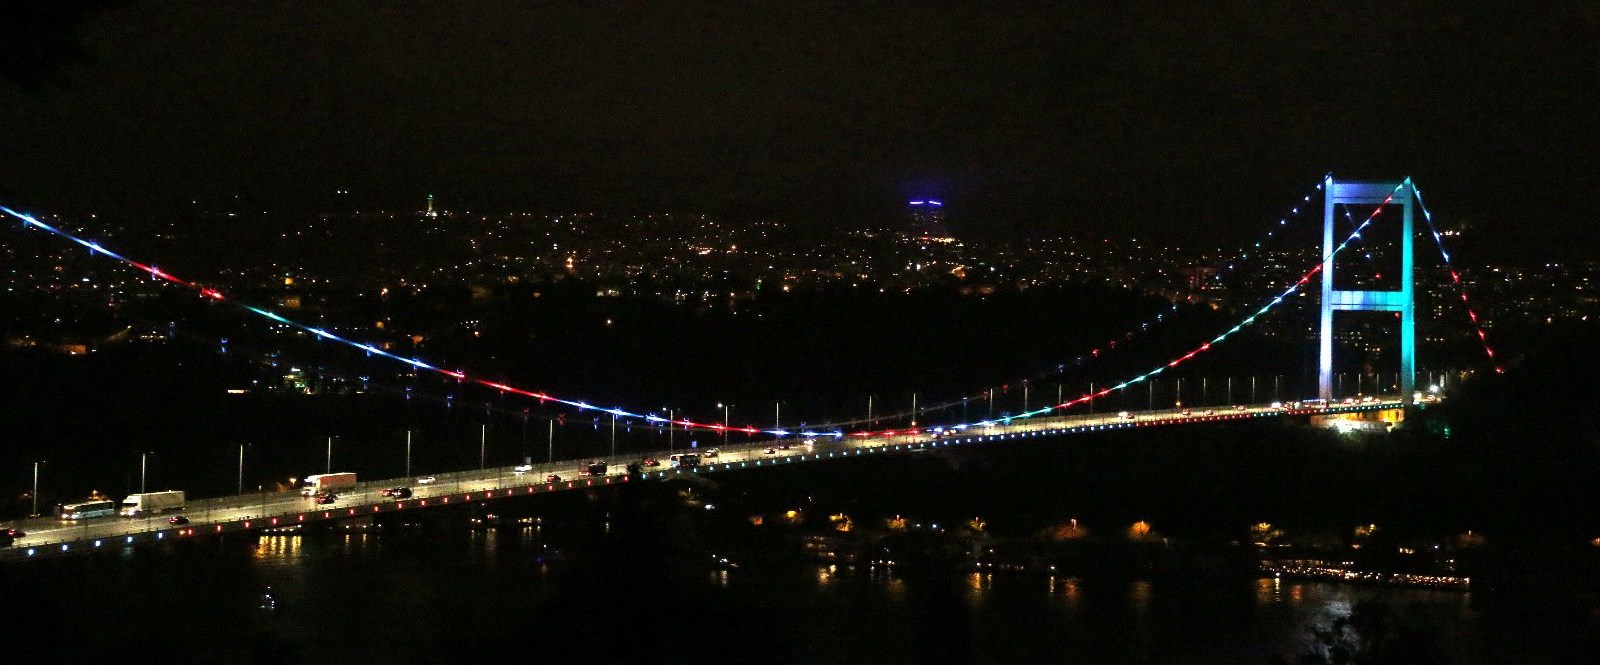 Köprüde Azerbaycan renkleri